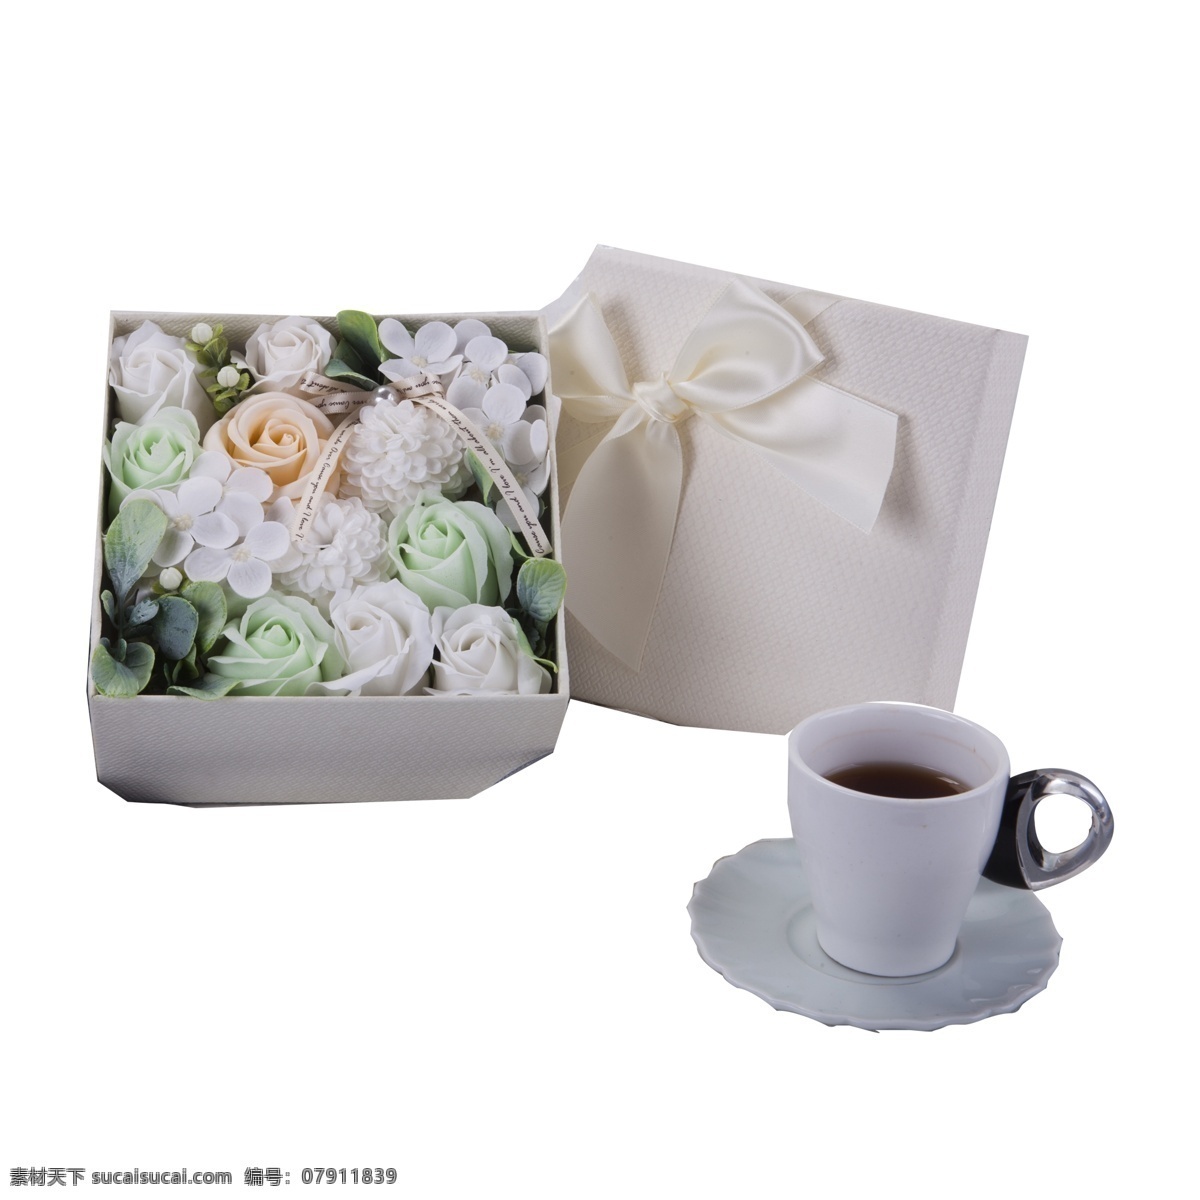 白色 花朵 杯子 免 抠 图 咖啡杯 漂亮的花朵 白色花朵 新鲜花朵 情人节礼盒 新鲜的礼盒